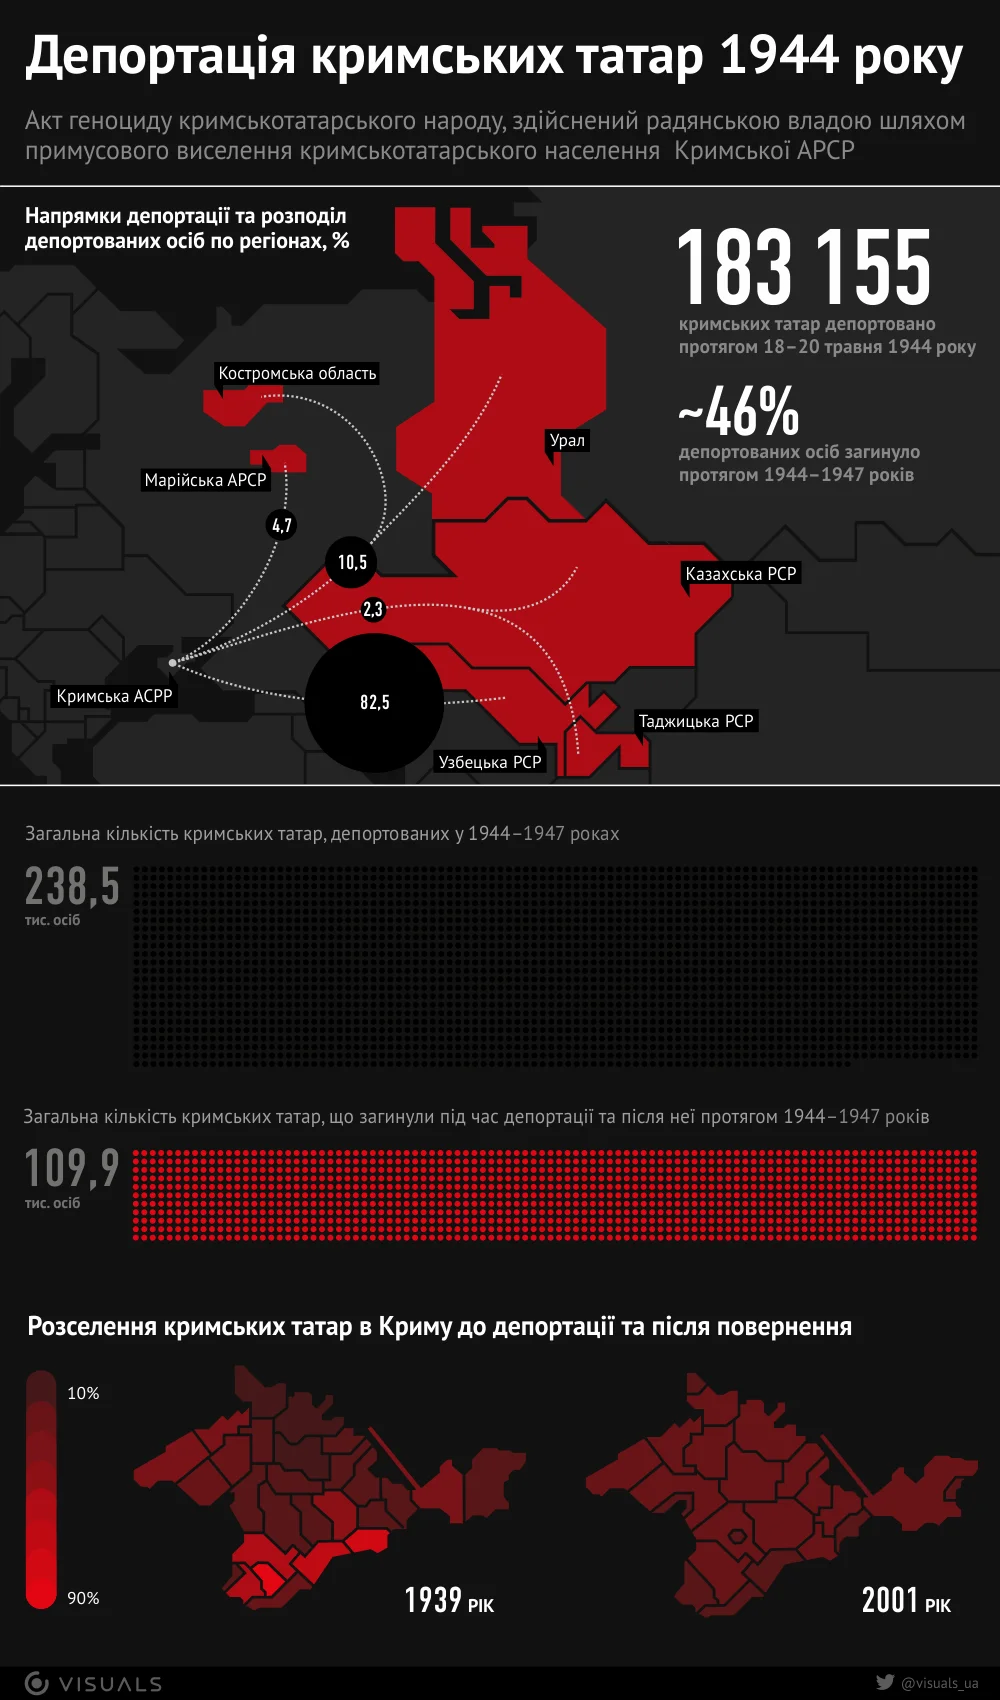 Депортация крымских татар в цифрах. Инфографика